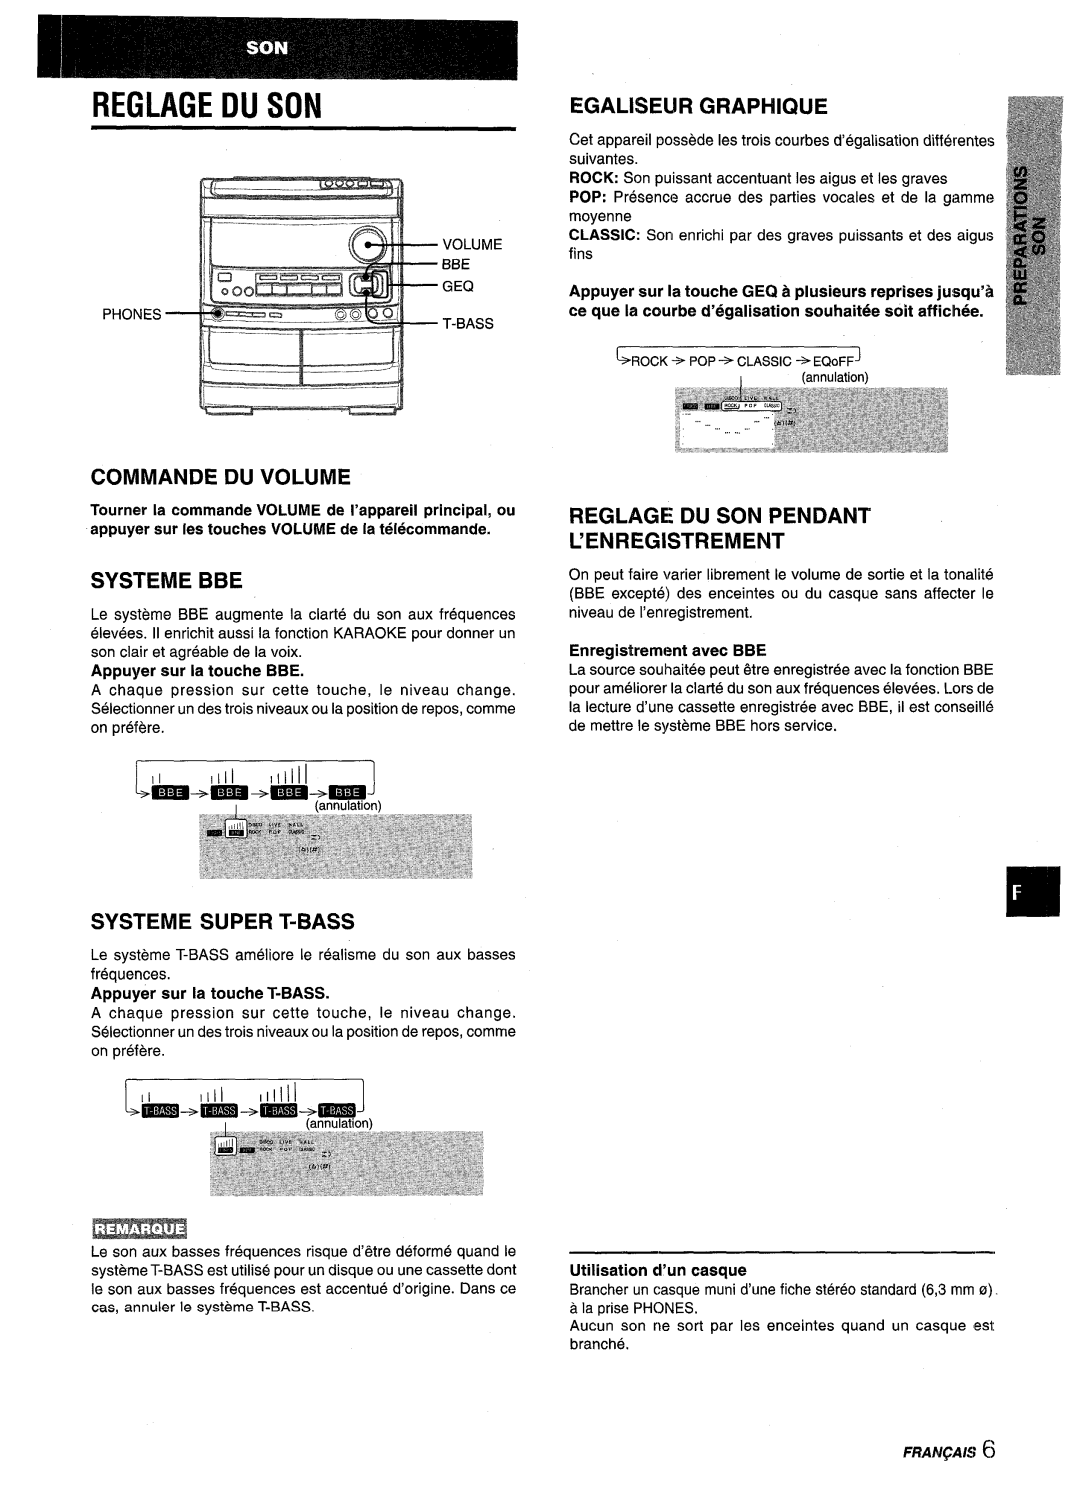 Aiwa NSX-V9000 manual Reglage Du Son, Commande Du Volume, Systeme Bbe, Systeme Super T-Bass, Egaliseur, Graphique, fins 